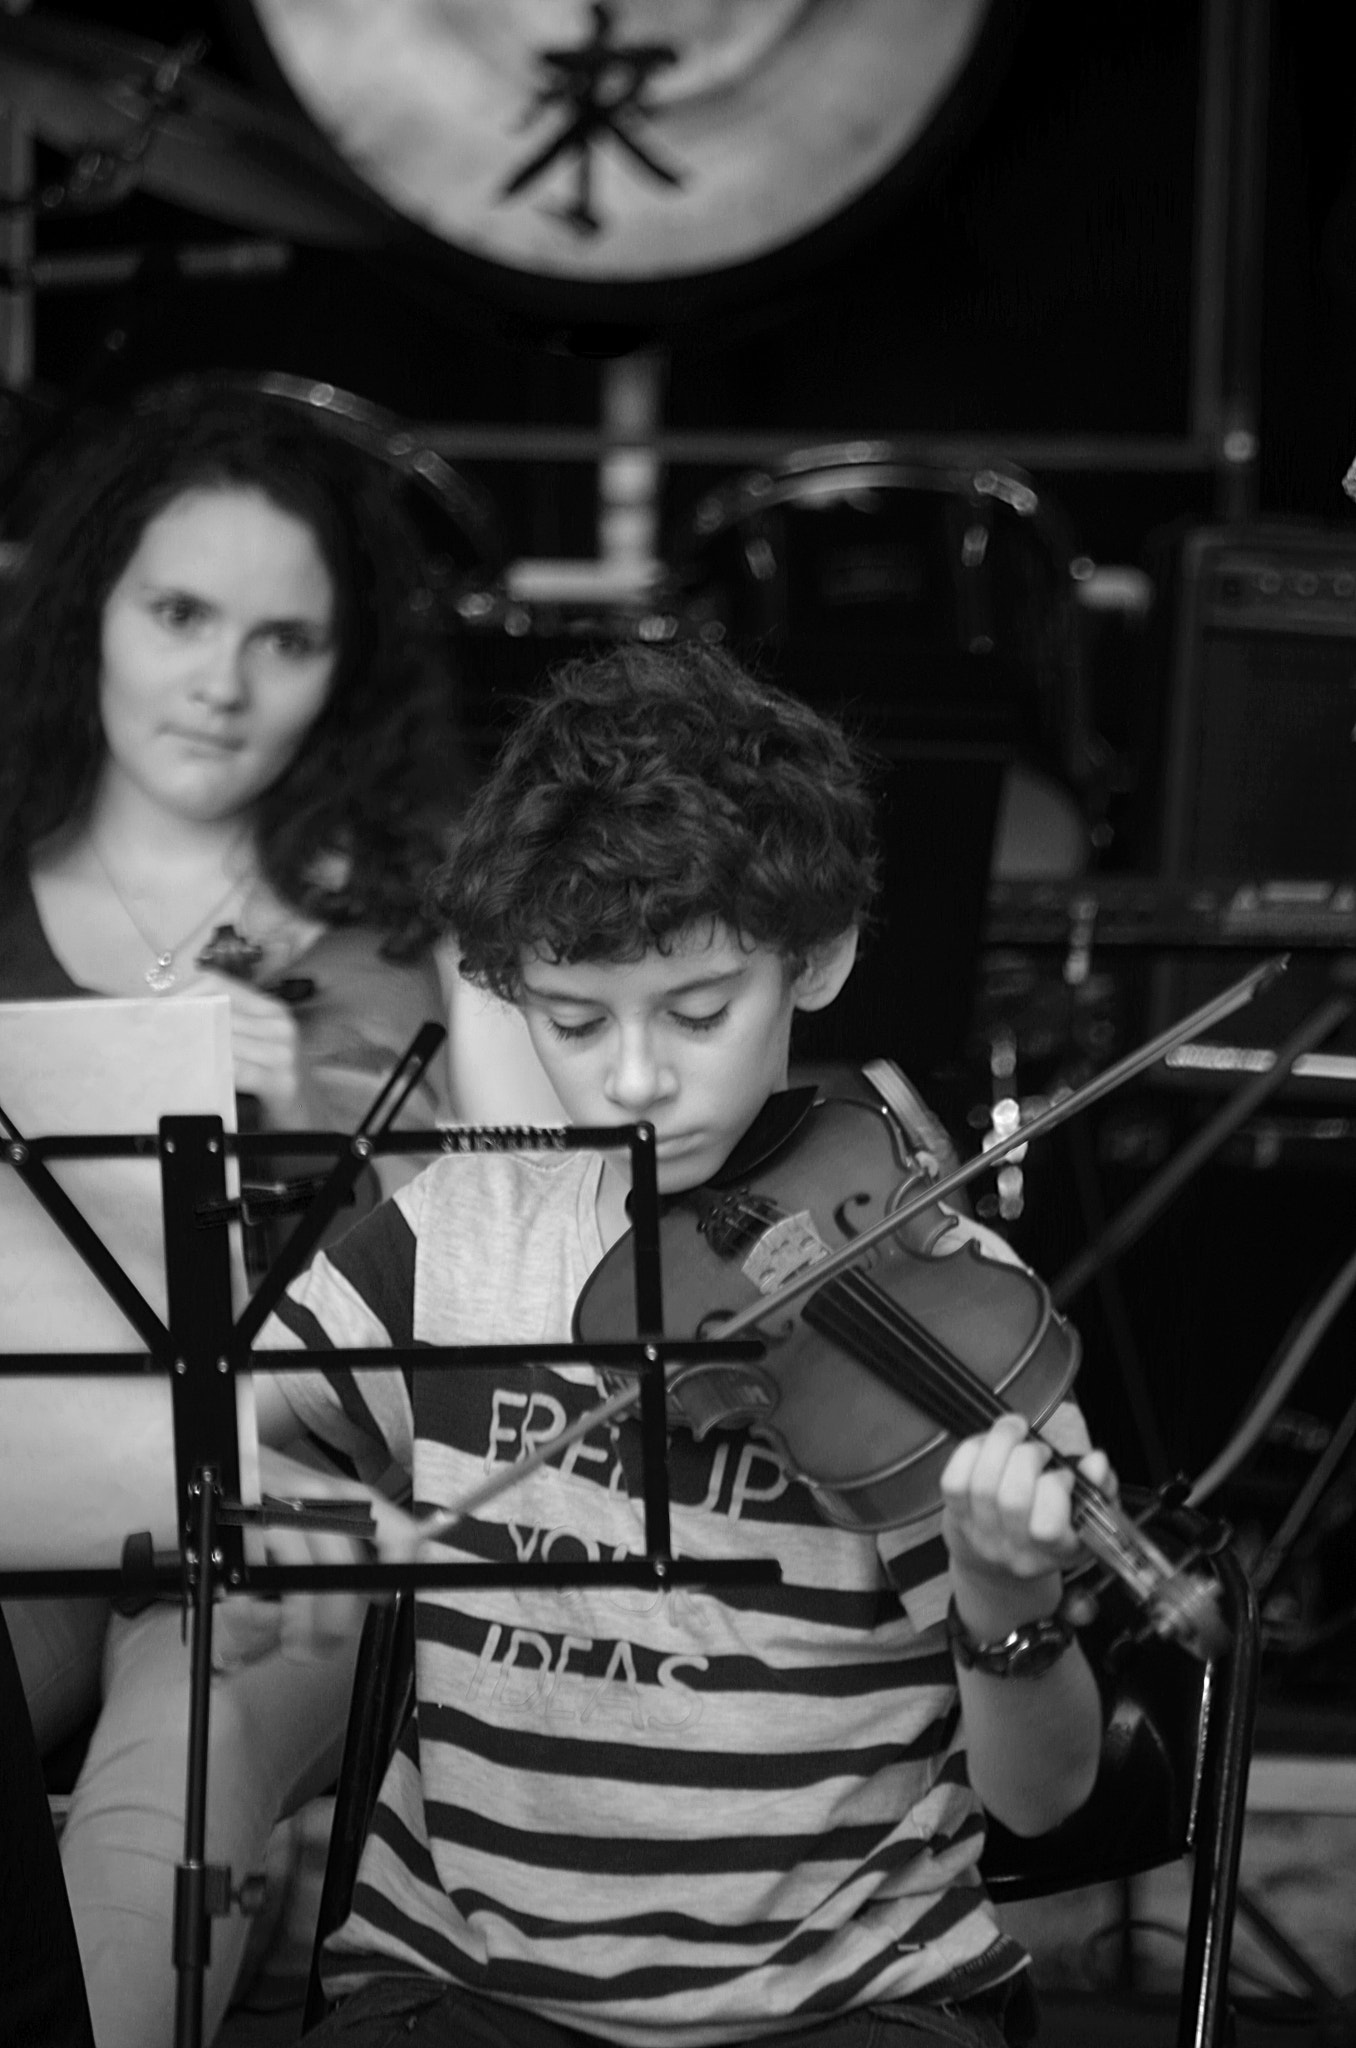 Pentax K-30 sample photo. Un jeune violoniste/a young violonist photography